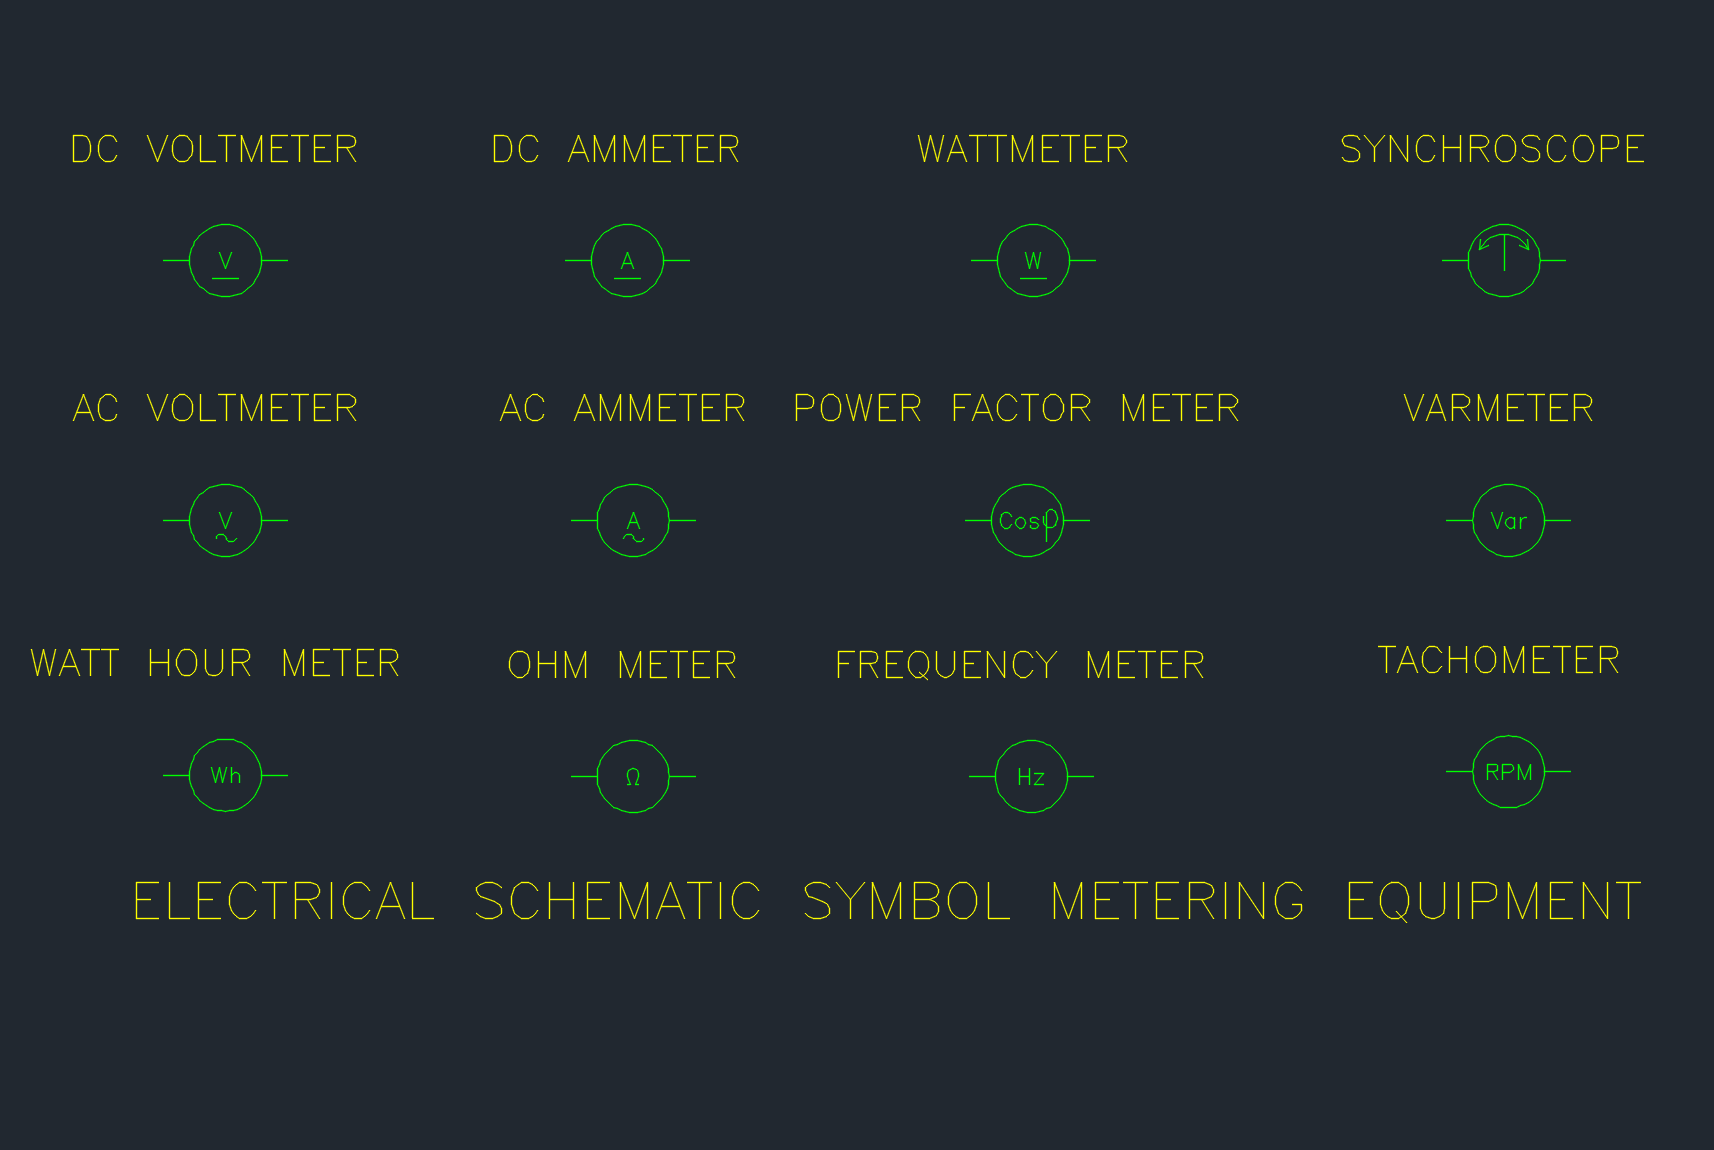 Schematic Metering Equipment Symbols